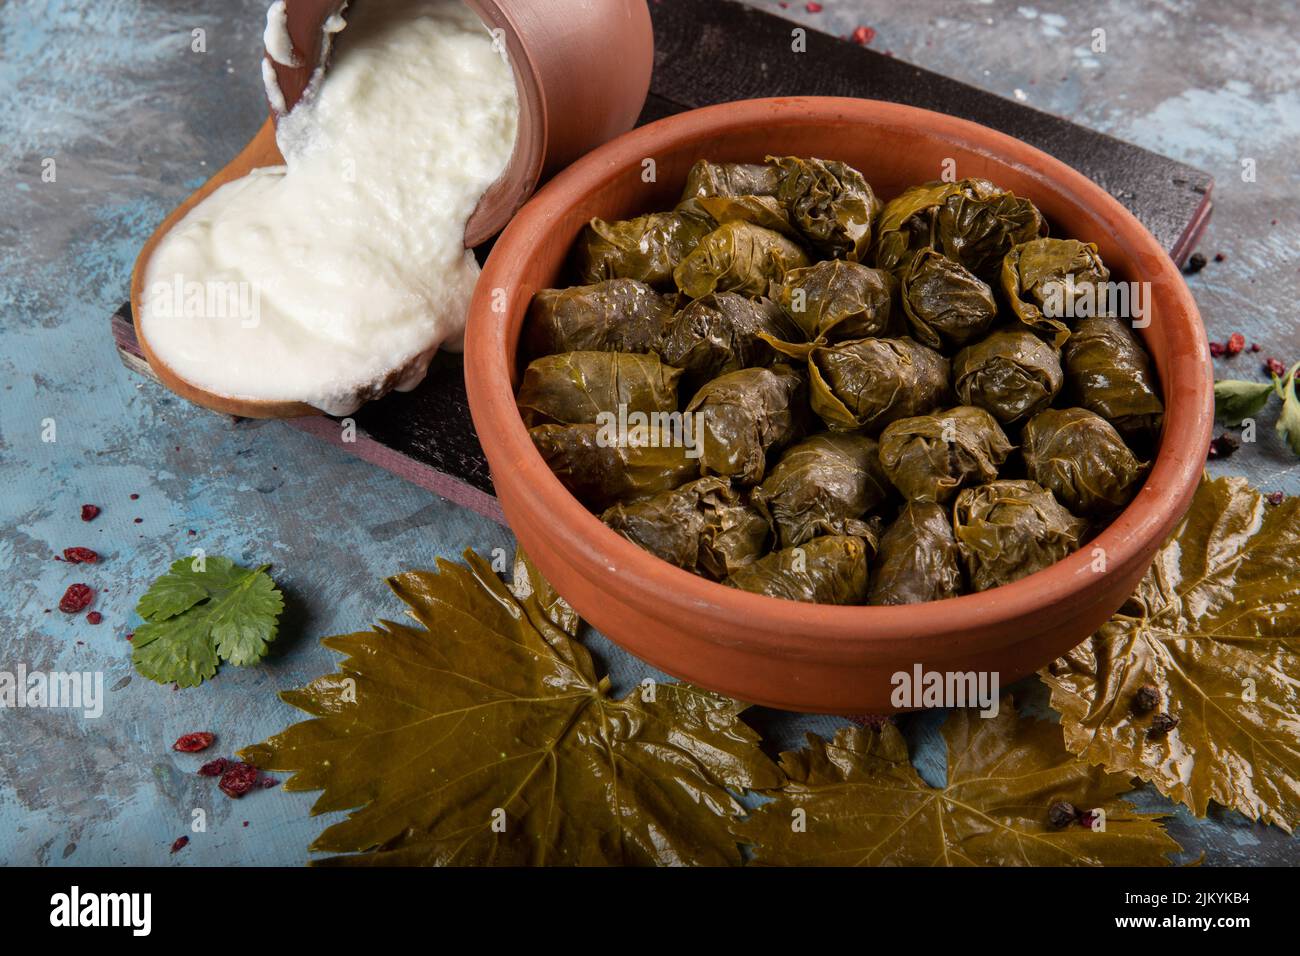 Eine Nahaufnahme des östlichen mediterranen Gerichts Dolma serviert mit griechischem Joghurt Stockfoto